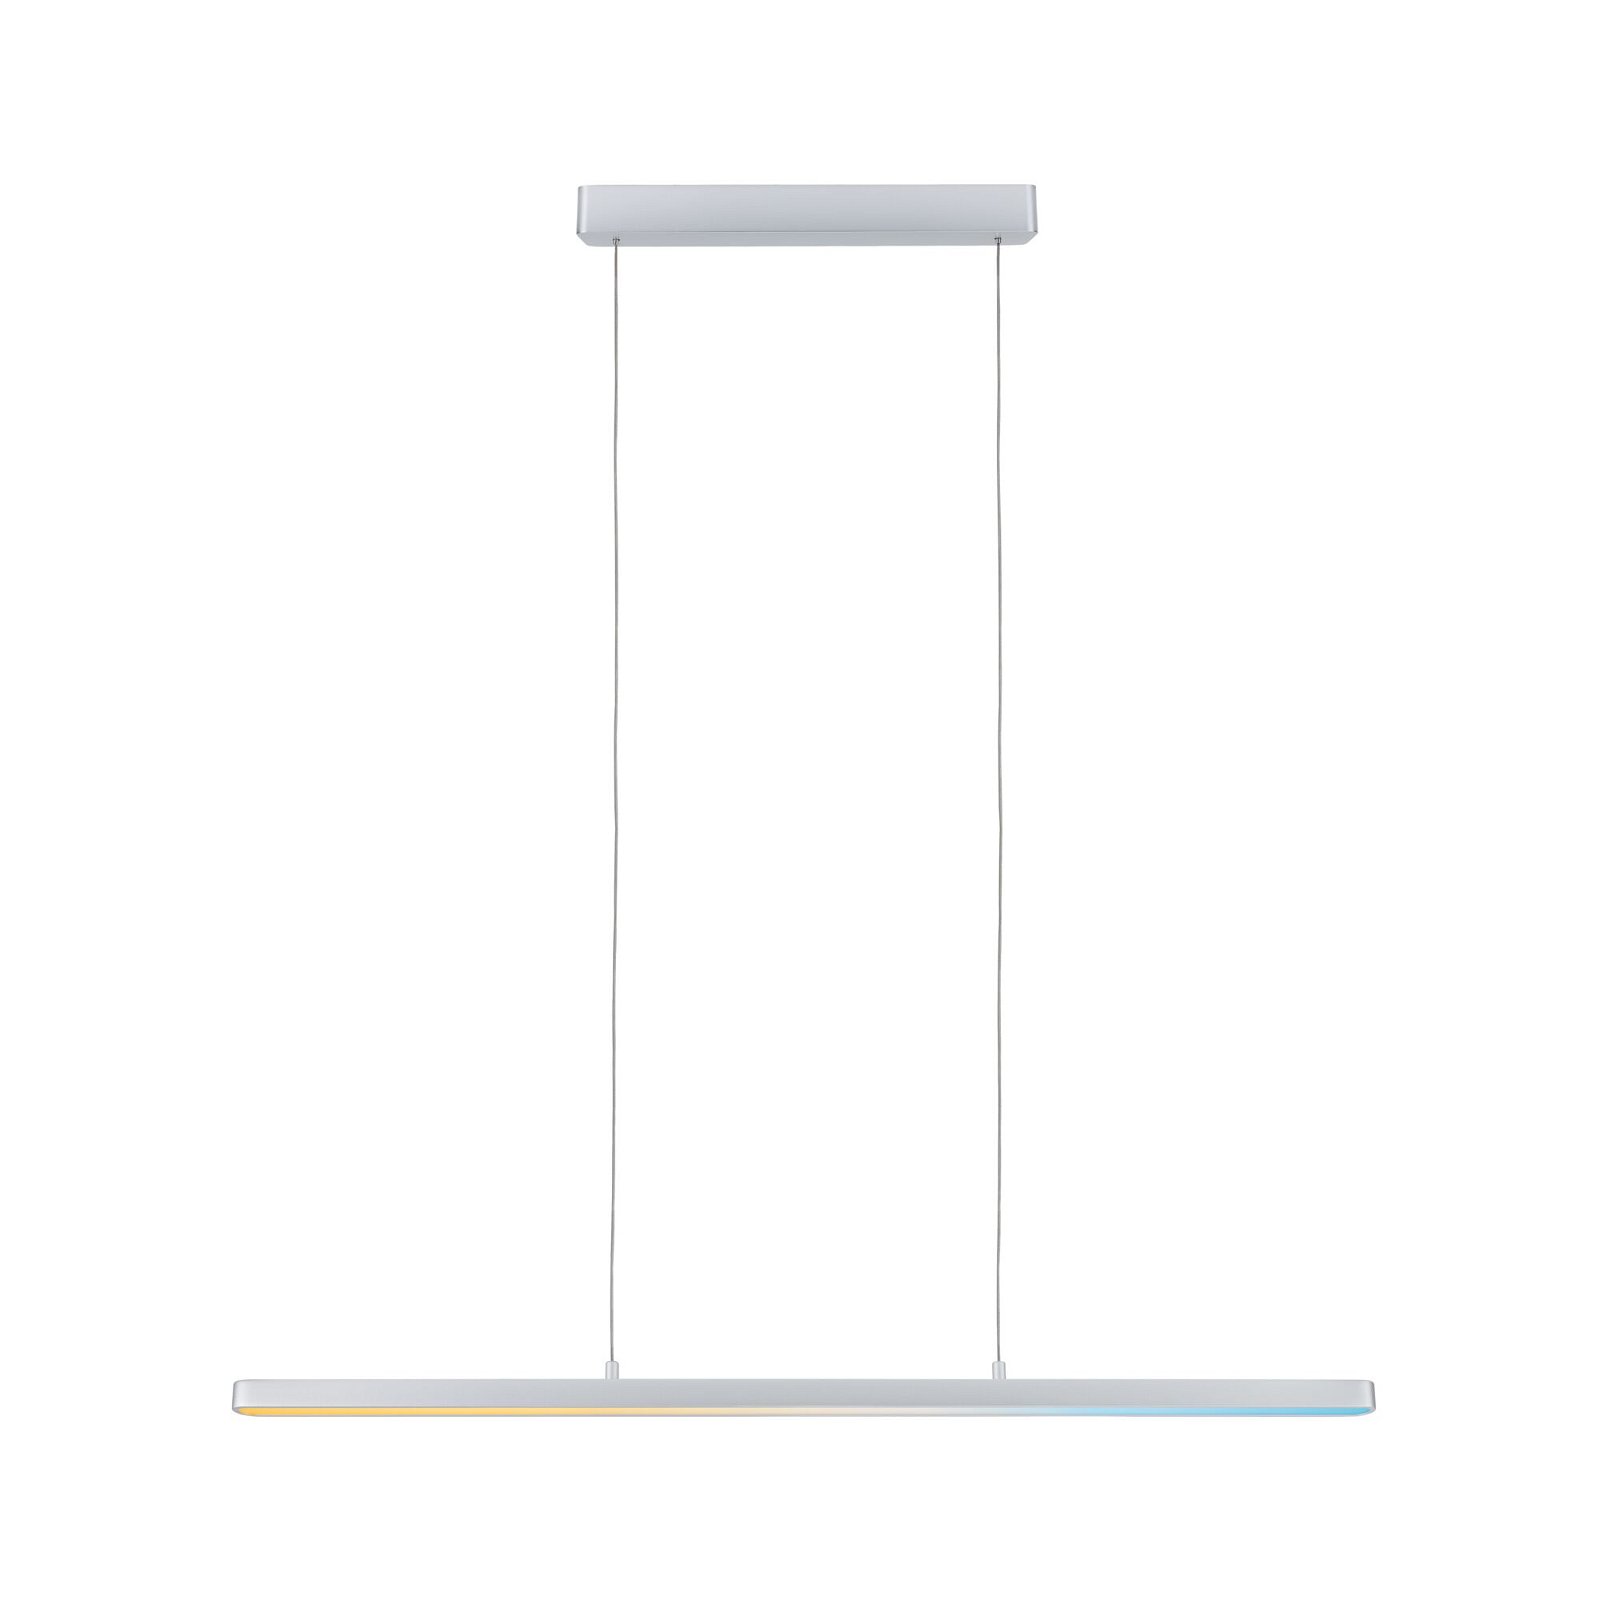 LED-hanglamp Smart Home Zigbee 3.0 Lento Tunable White 3x2100lm 3x13,5W Chroom mat dimbaar